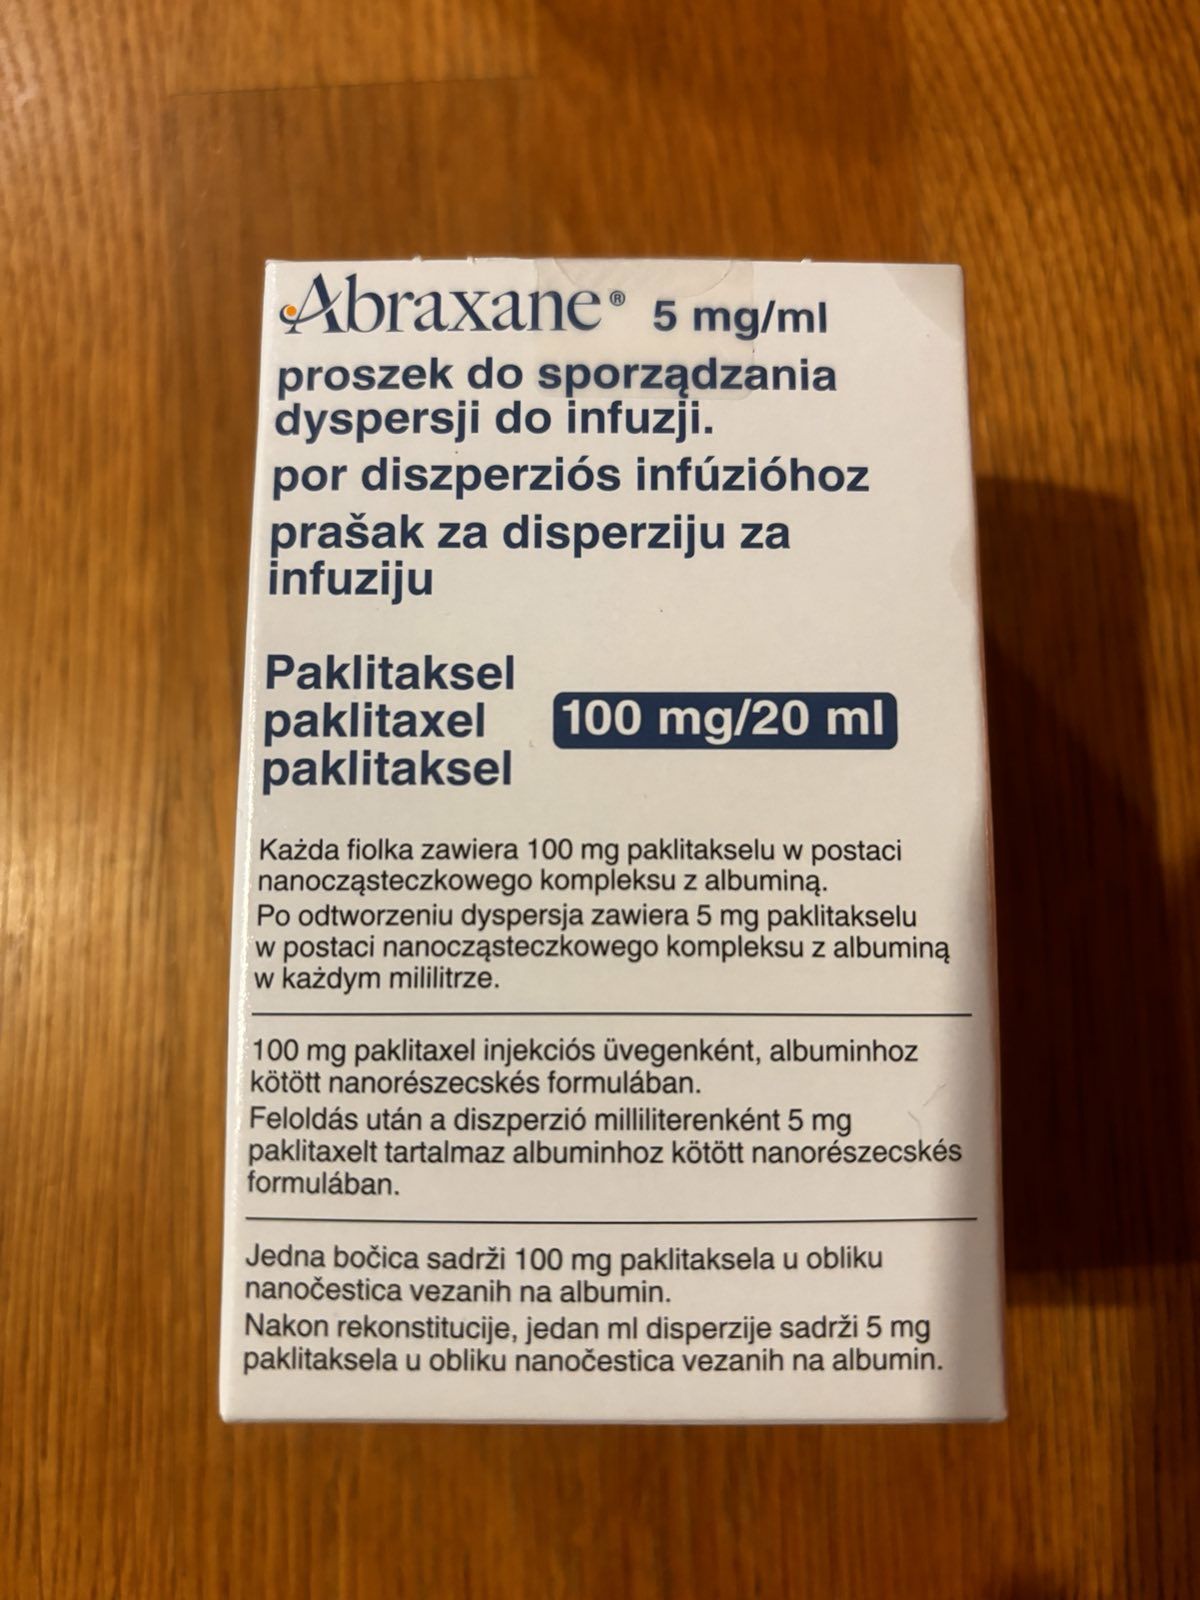 Ліки Абраксане 5мг/мл,Abraxane 5mg/ml куплені в Європі